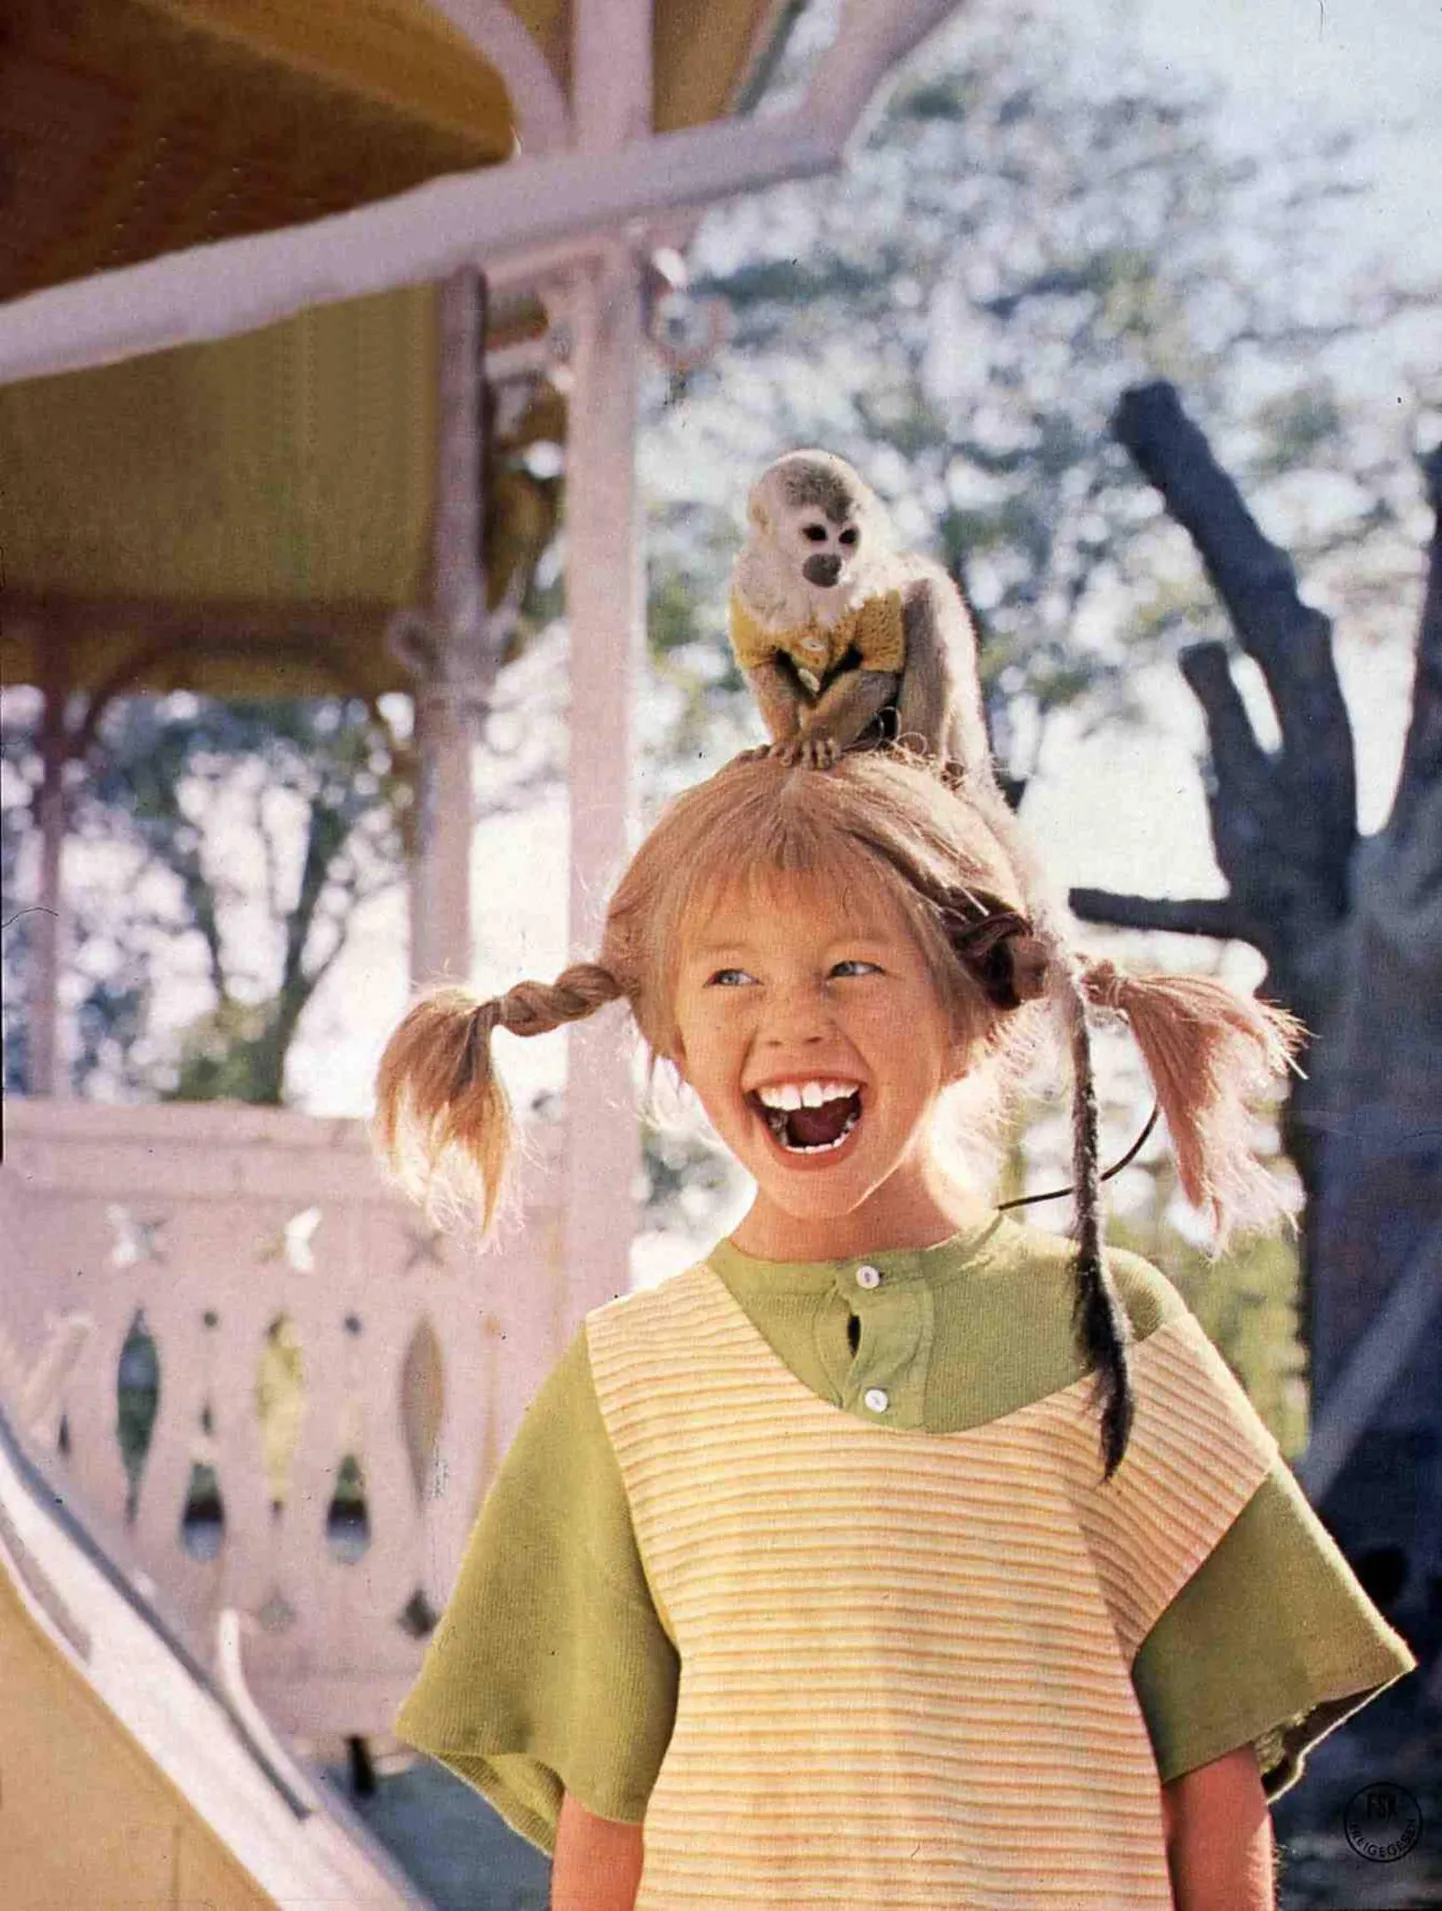 Näitleja Inger Nilsson 1968. aastal kehastamas Pipit lastefilmis.